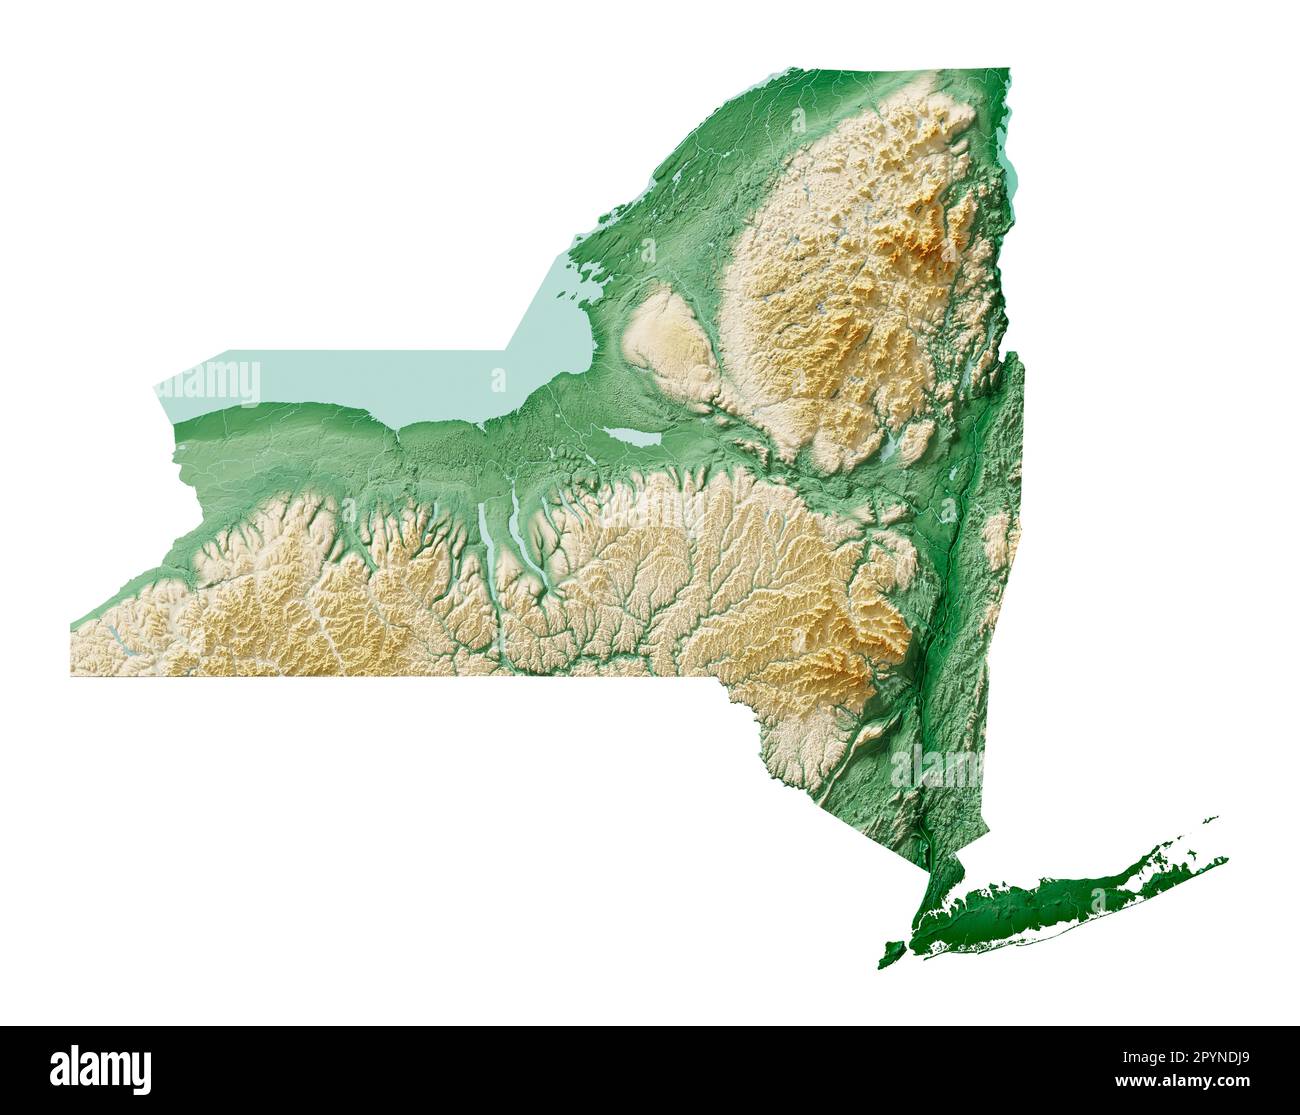 Lo stato americano di New York. Rendering 3D estremamente dettagliato di una mappa in rilievo ombreggiata con fiumi e laghi. Colorato dall'elevazione. Creato con i dati satellitari. Foto Stock